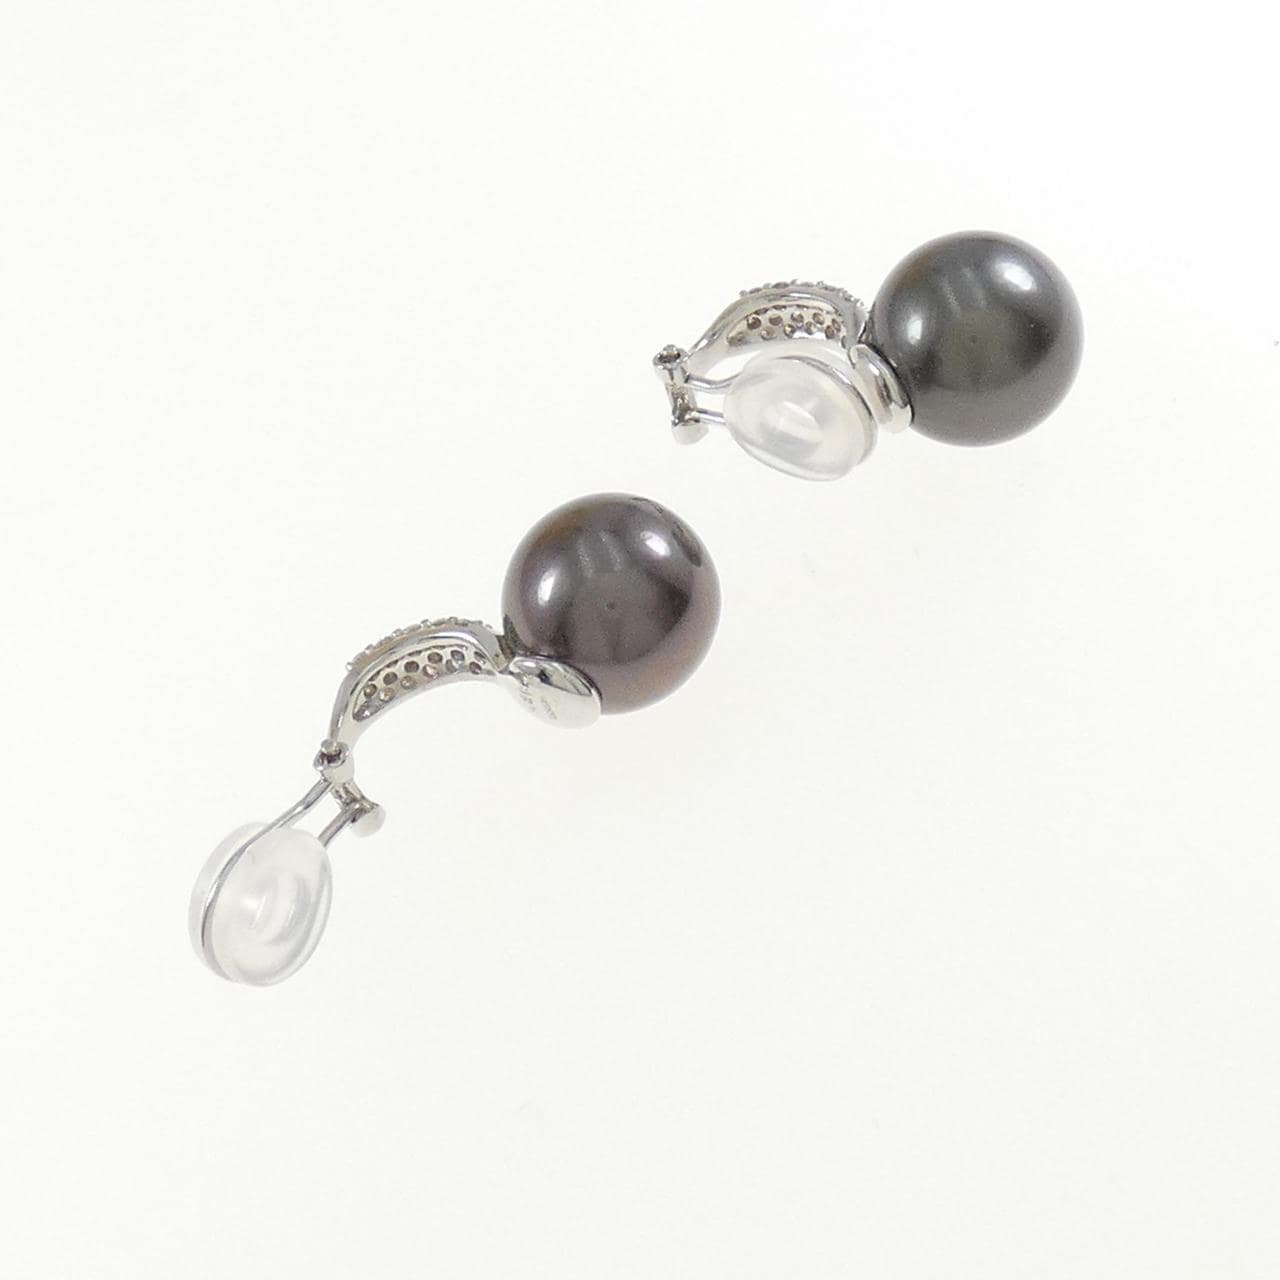 K18WG black butterfly pearl earrings 12.0mm